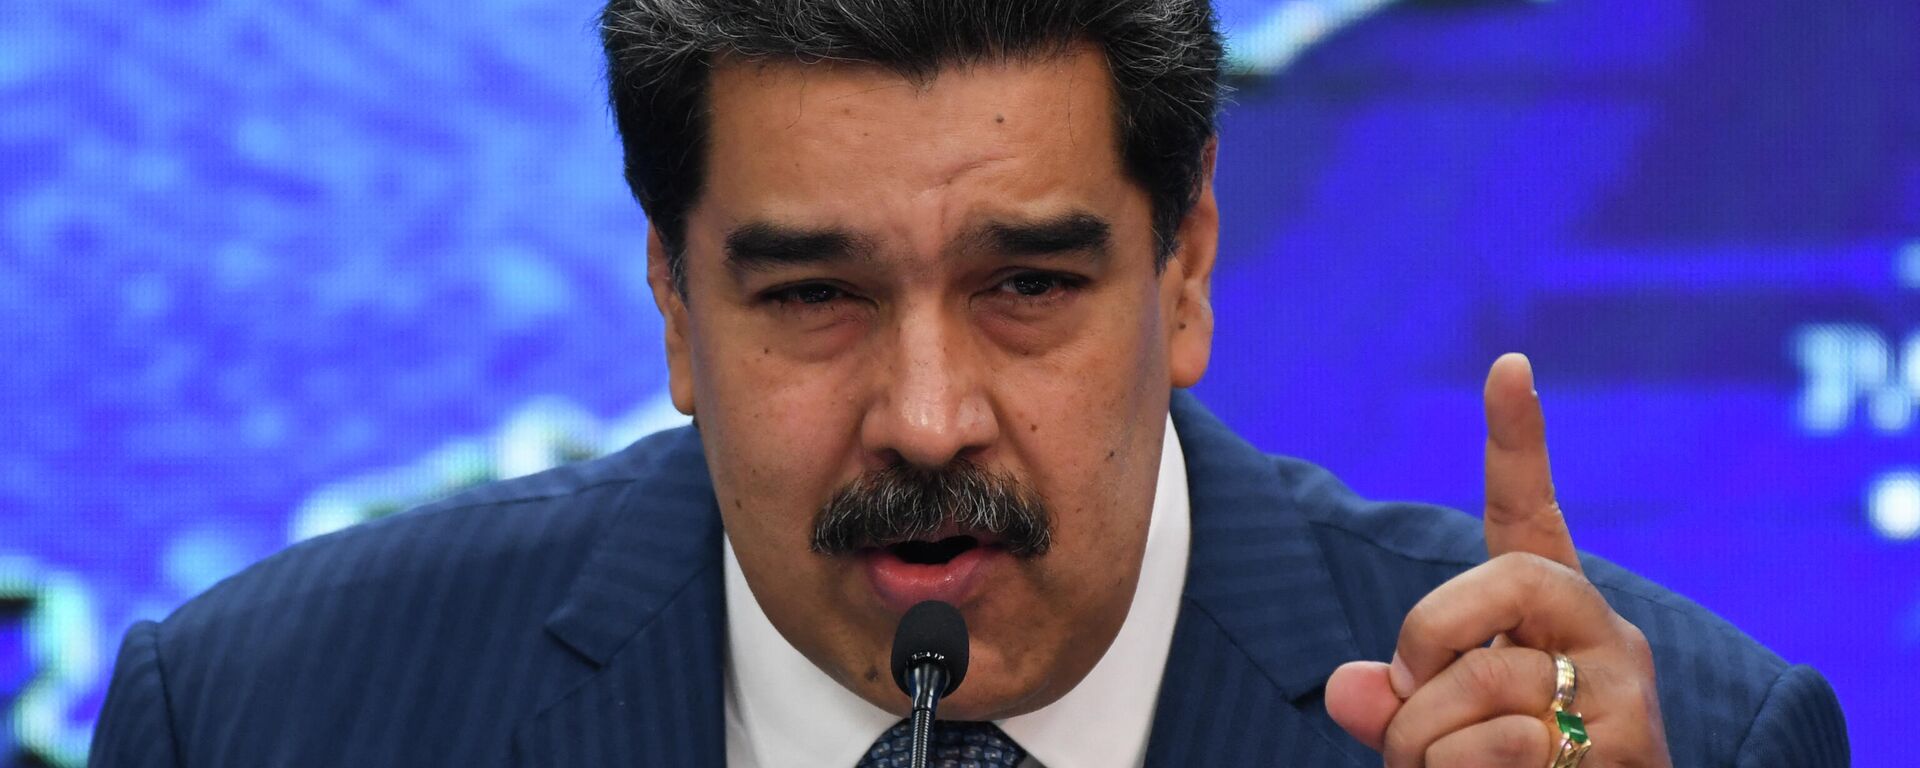 Nicolás Maduro, presidente de Venezuela - Sputnik Mundo, 1920, 25.09.2021